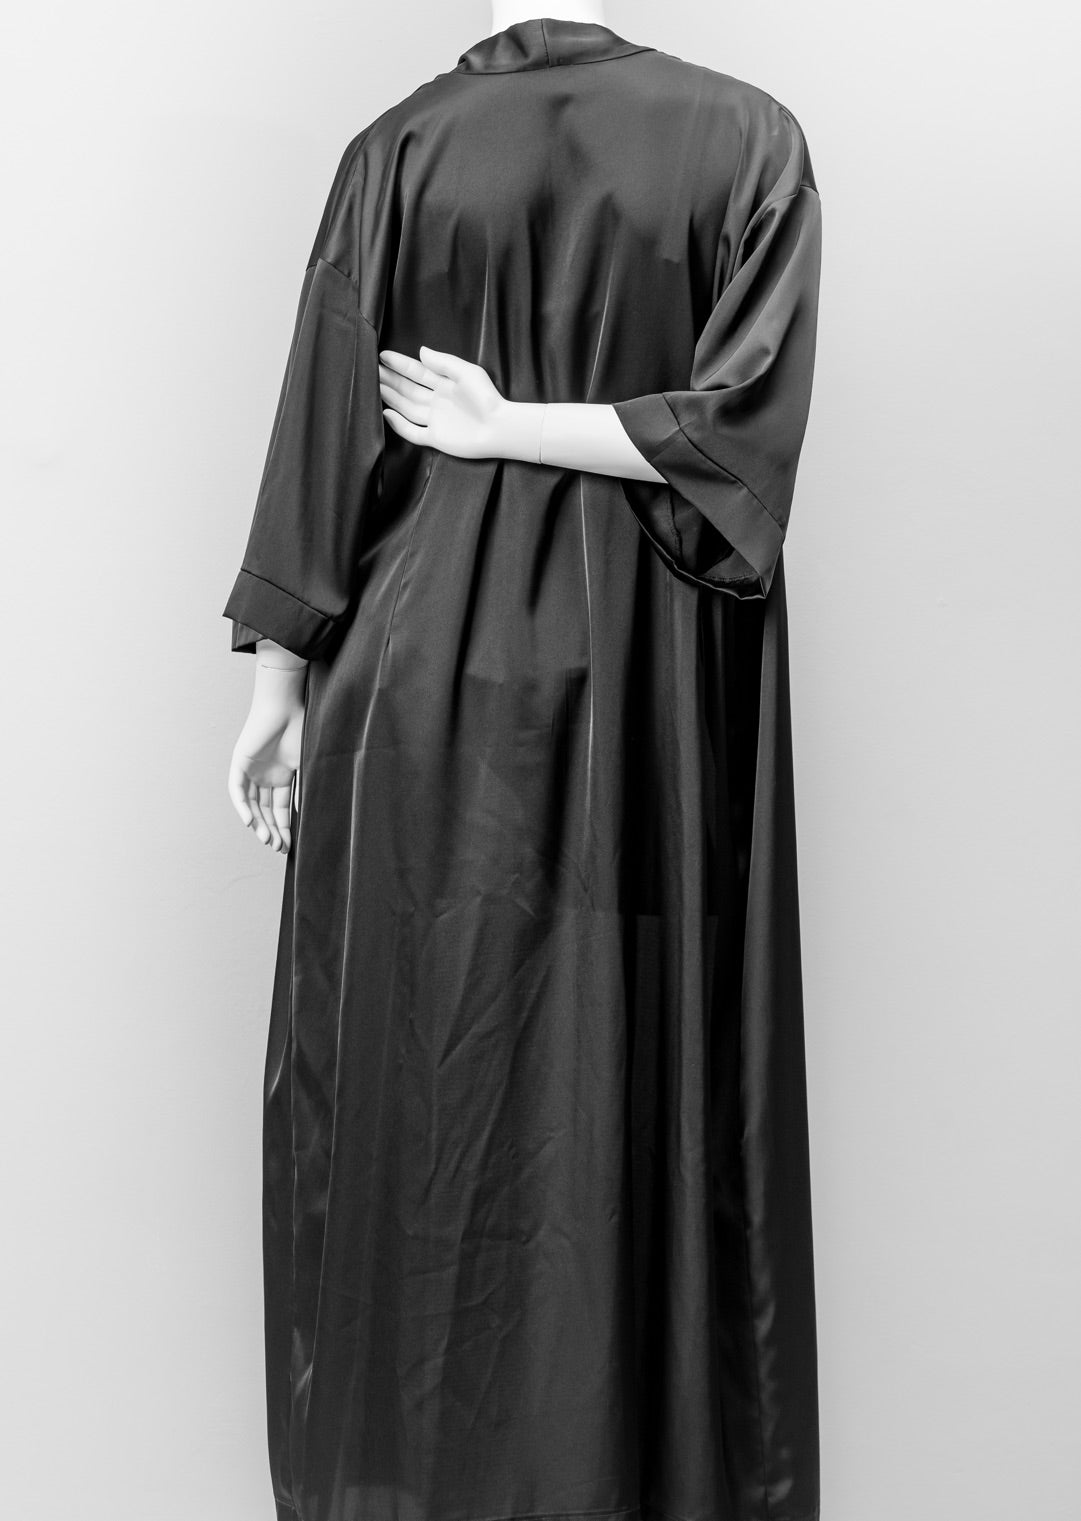 Beltza Black Kimono Robe